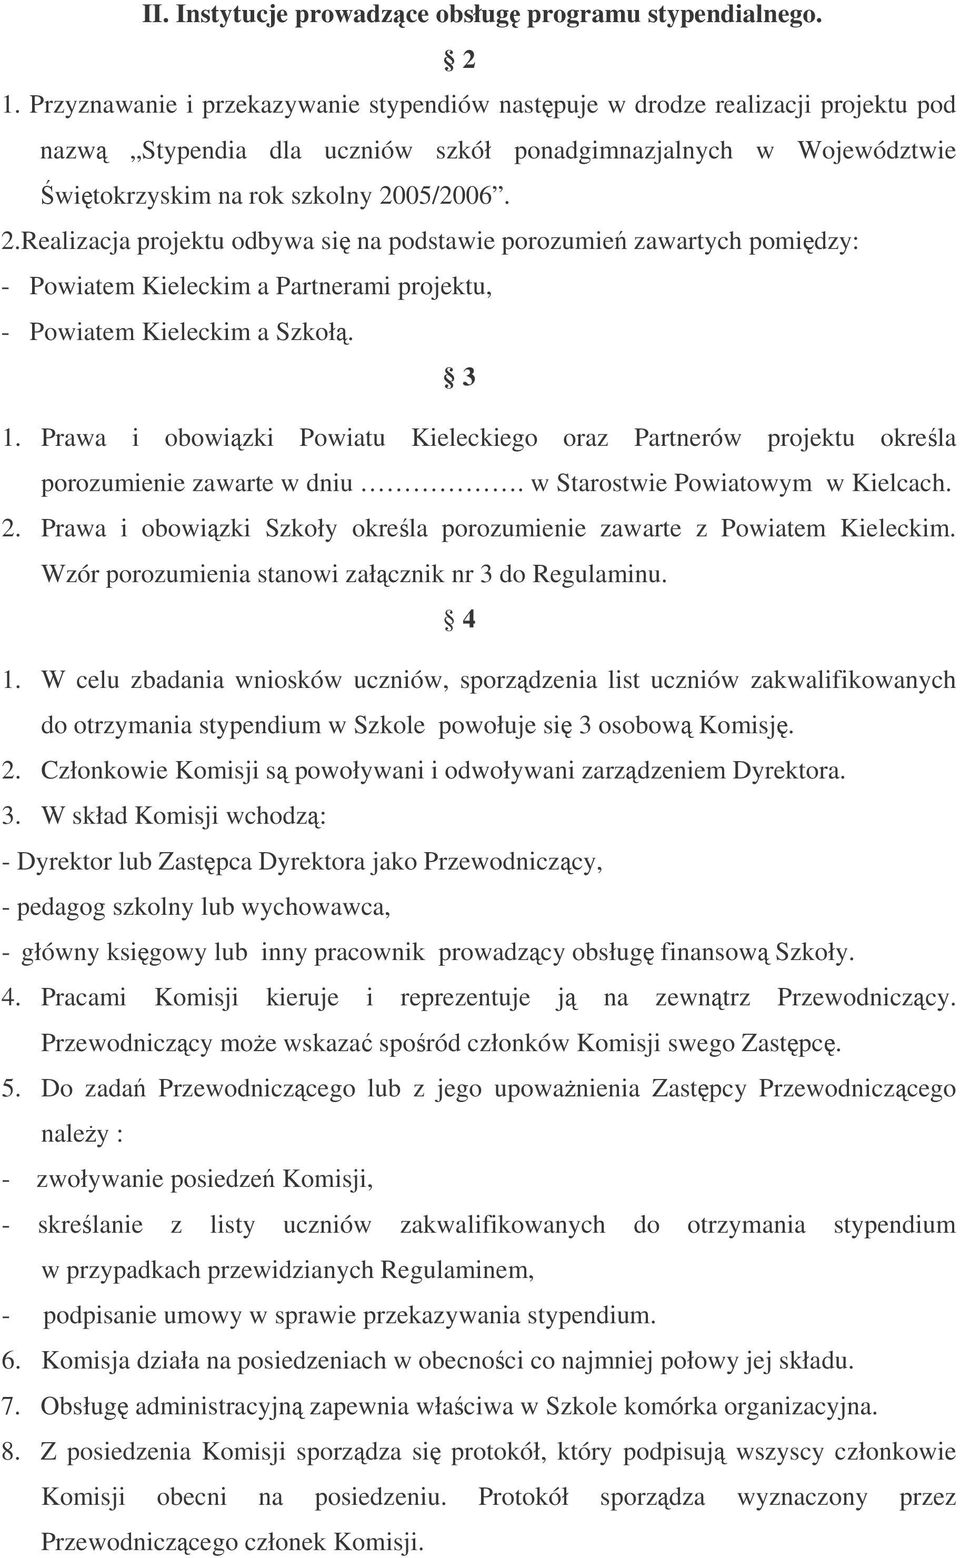 05/2006. 2.Realizacja projektu odbywa si na podstawie porozumie zawartych pomidzy: - Powiatem Kieleckim a Partnerami projektu, - Powiatem Kieleckim a Szkoł. 3 1.